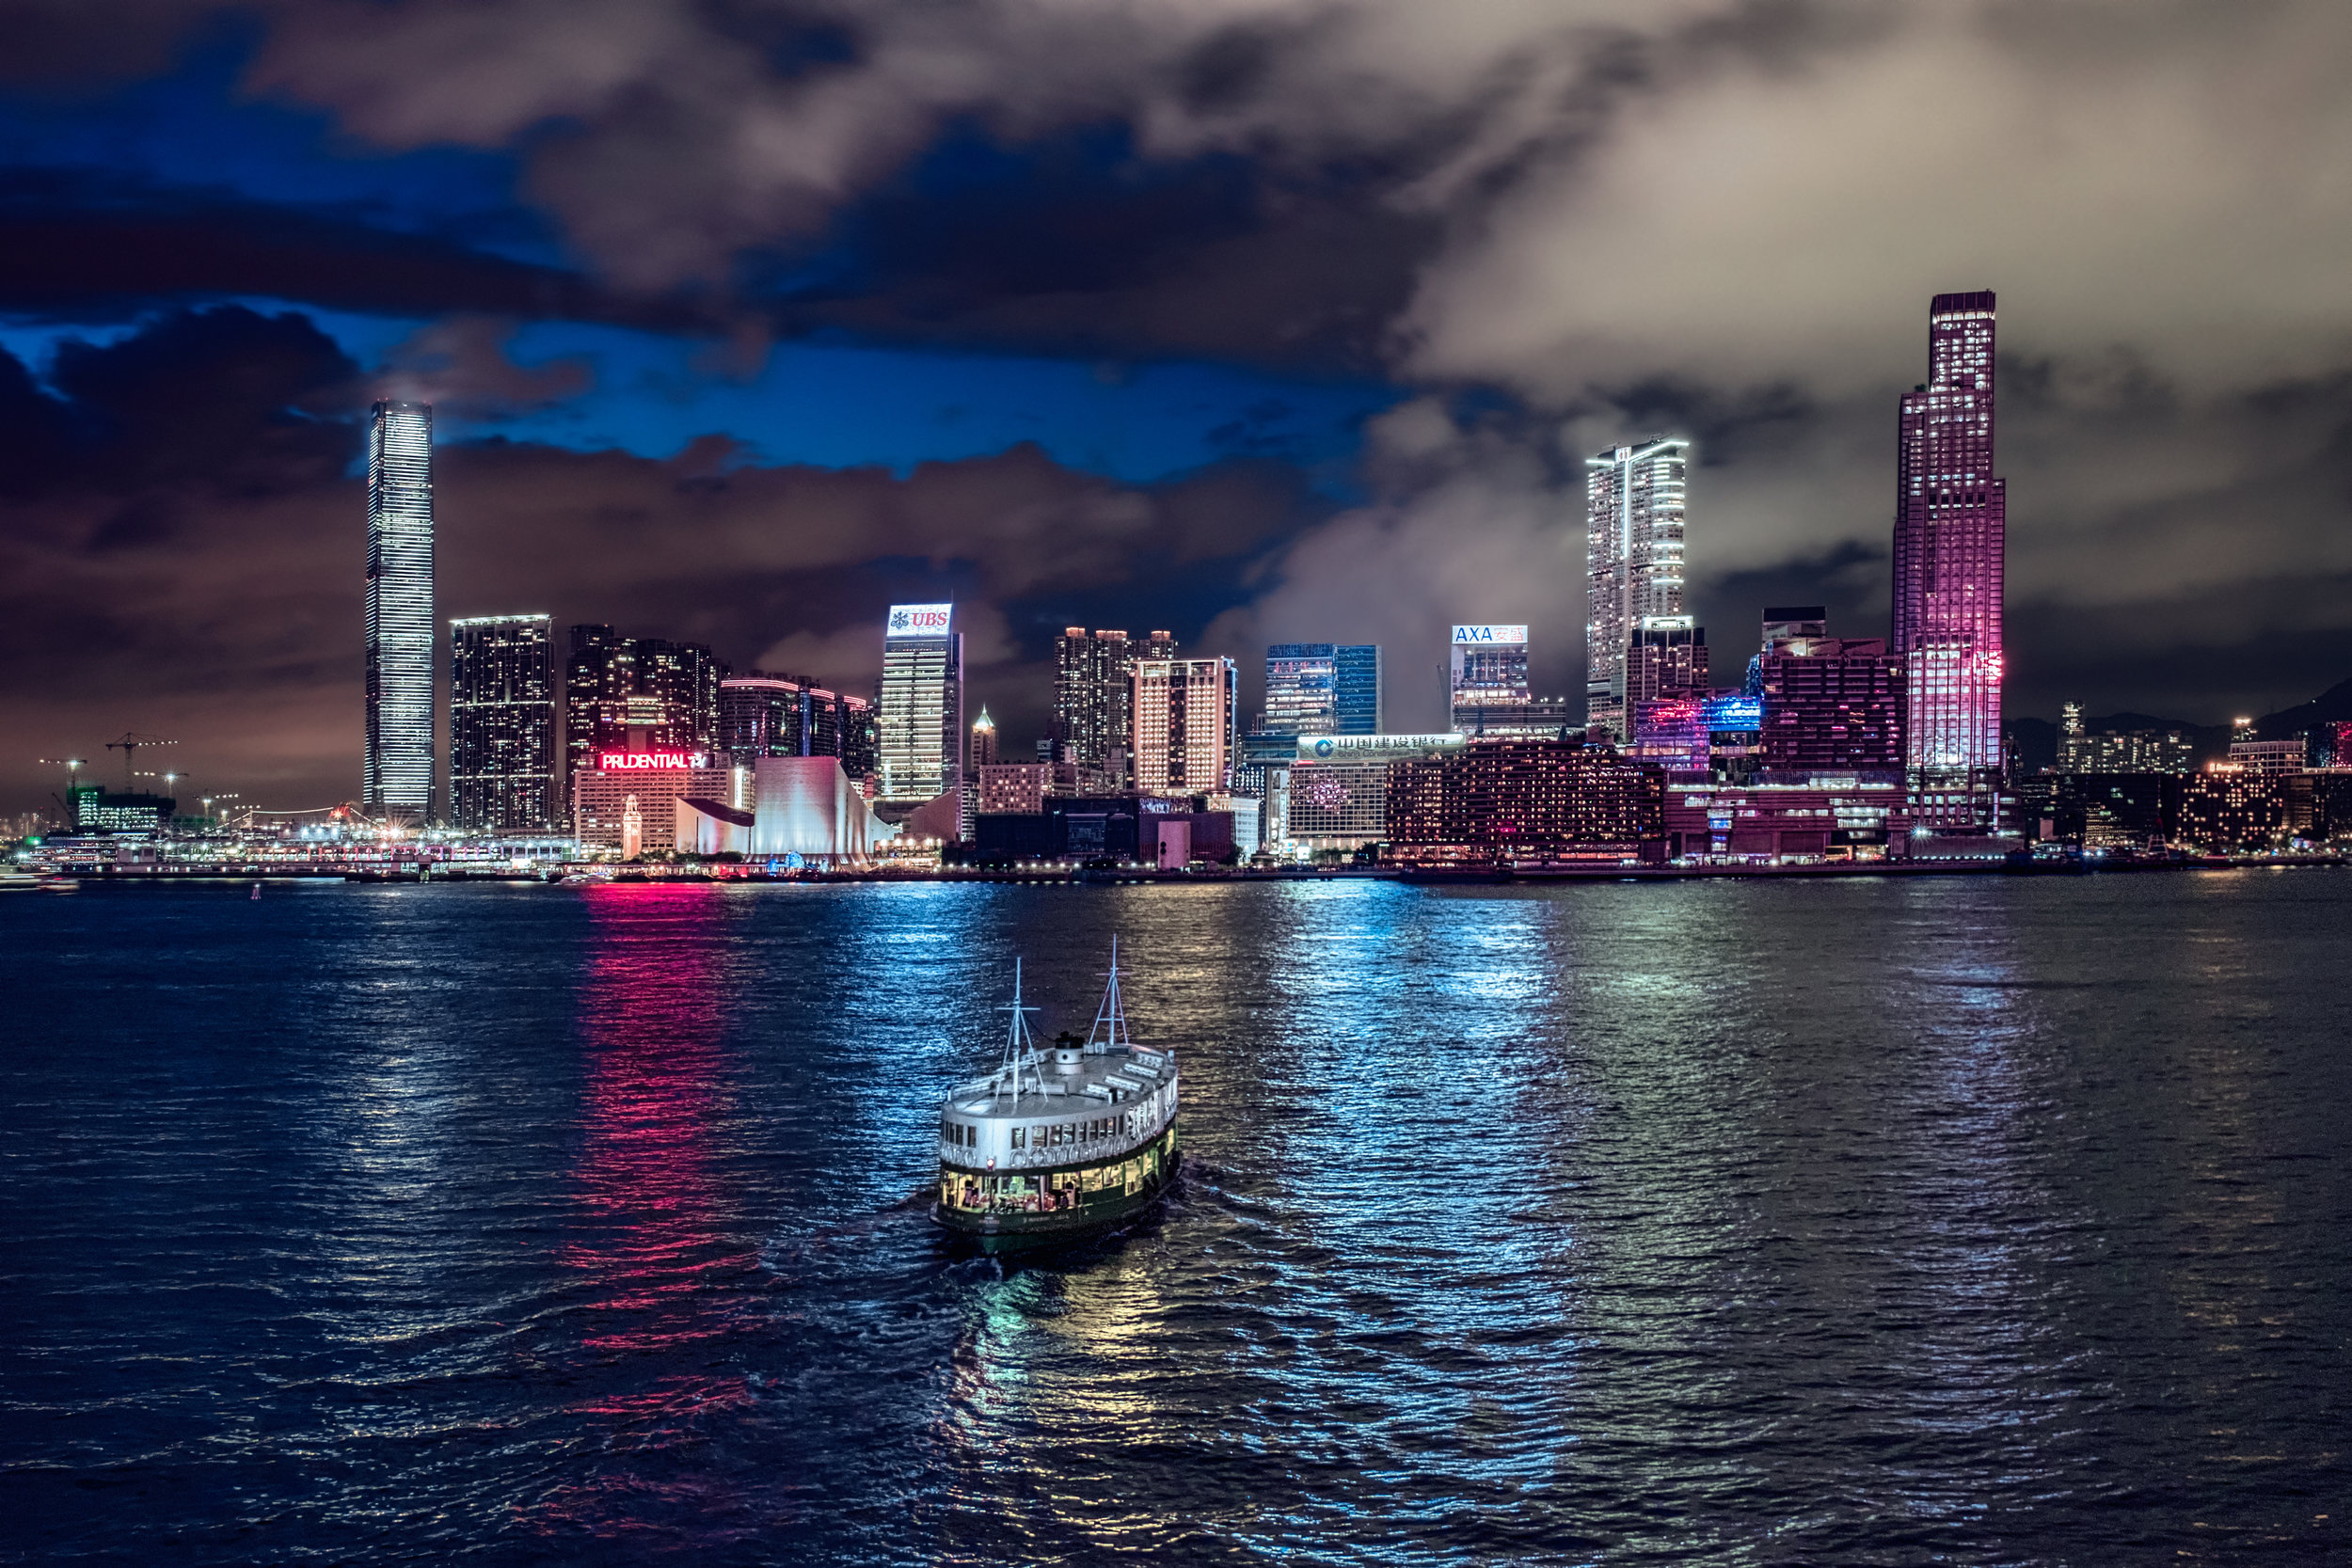 Star Ferry | Hong Kong | China